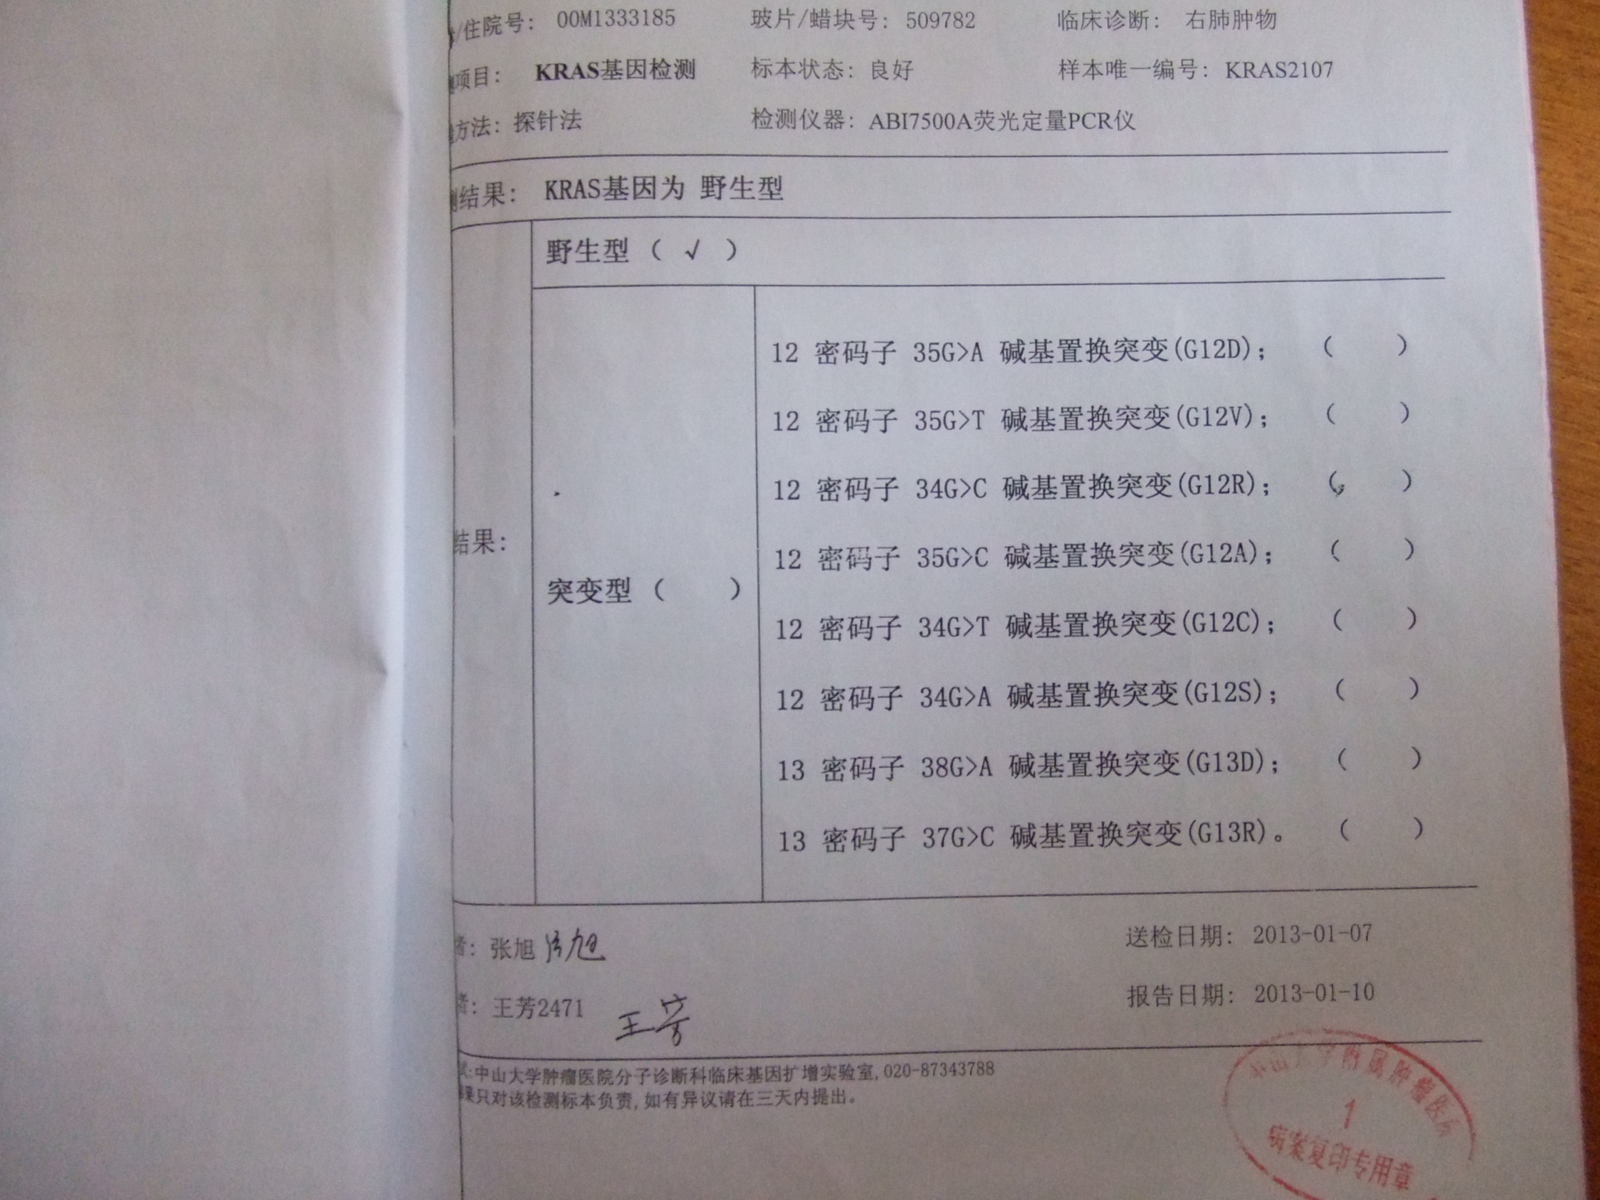 在广州中肿做的检查费用一共5000多，具体是不是全部这些不太清楚。小孩出的钱。